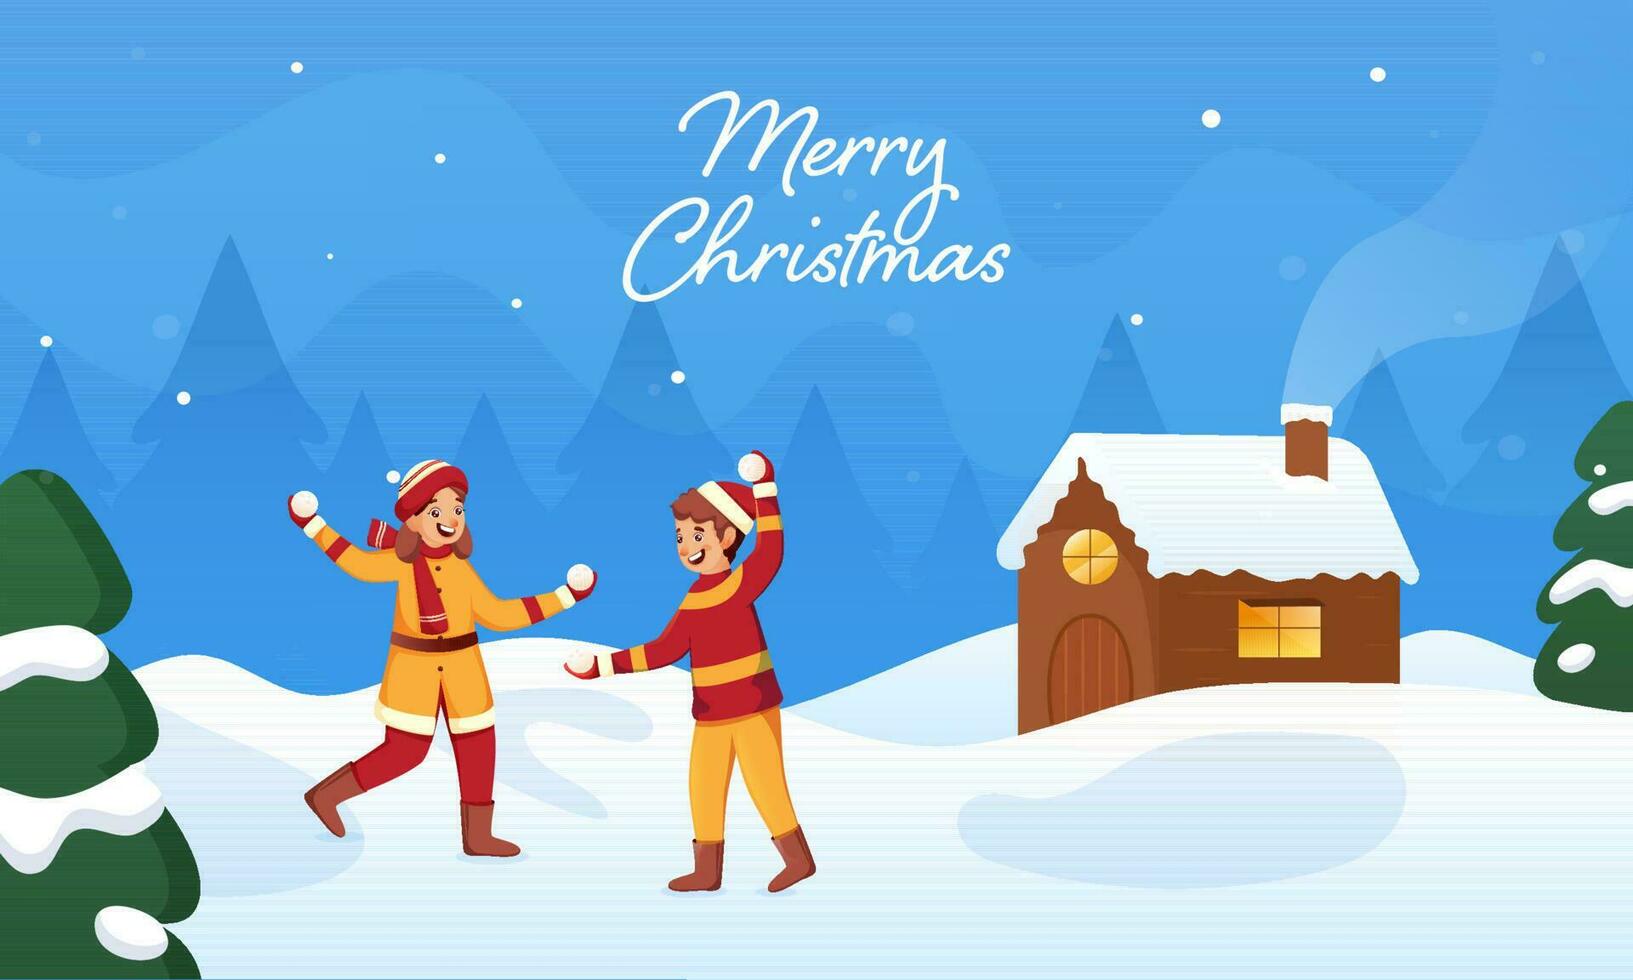 fröhlich Weihnachten Feier Banner Design mit Kinder werfen Schneebälle beim jeder andere, Weihnachten Bäume und Kamin Haus auf schneebedeckt Blau Hintergrund. vektor